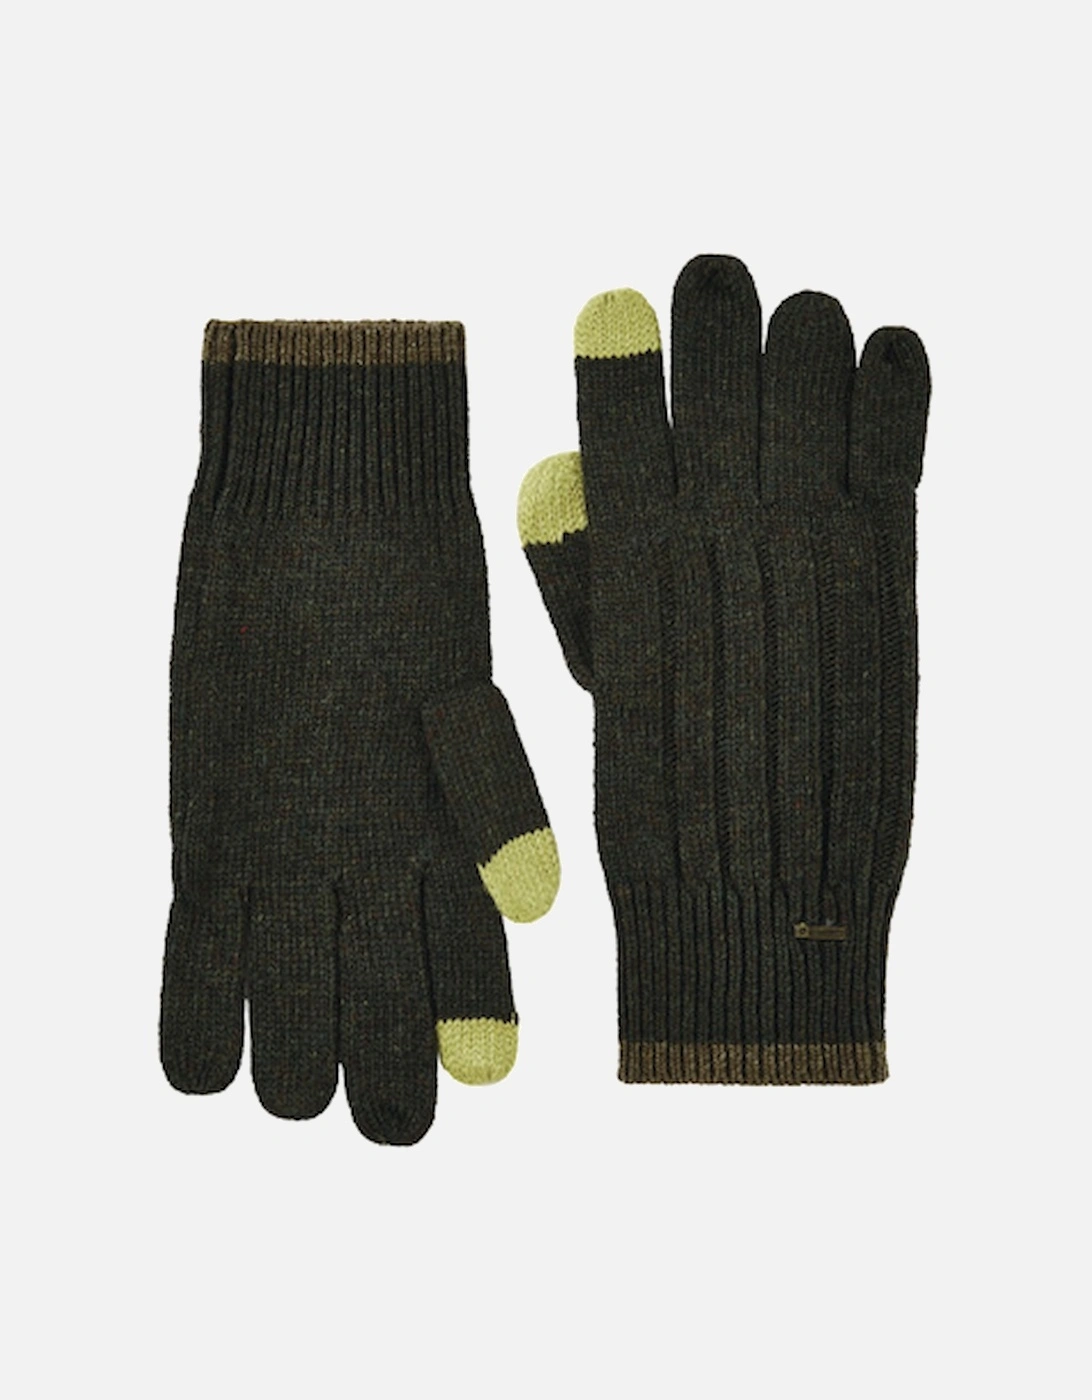 Marsh Gloves Olive, 2 of 1